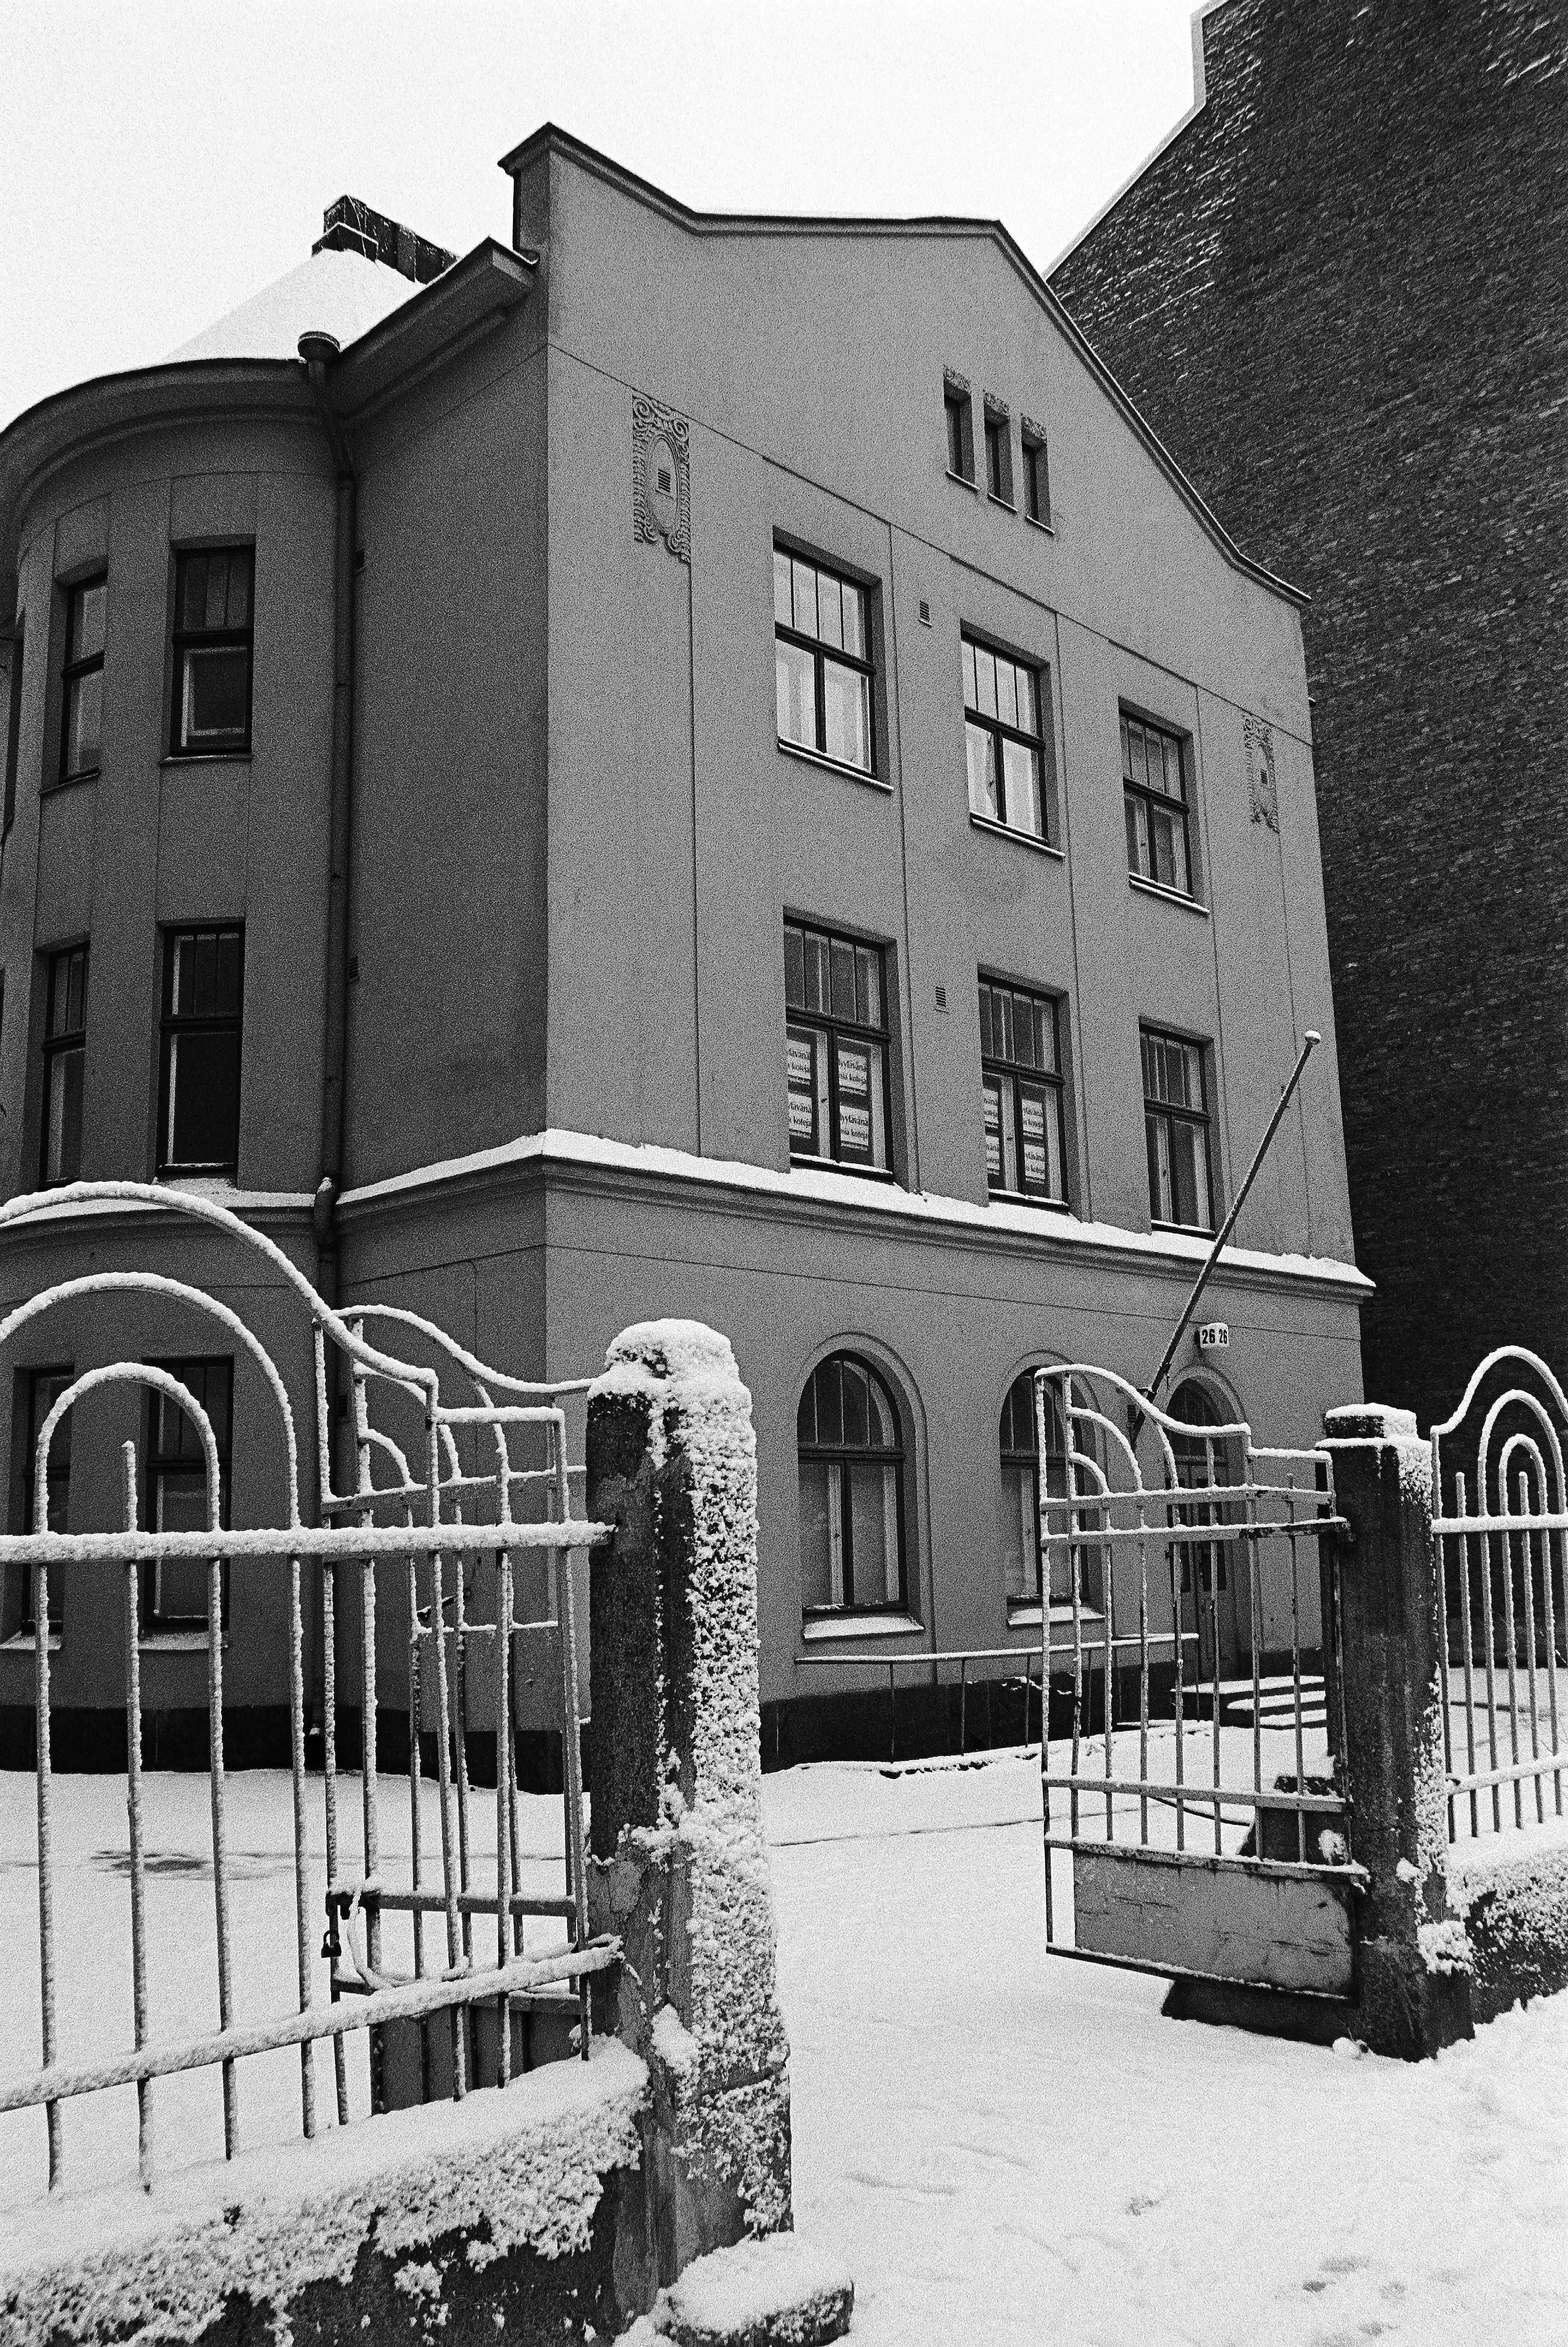 Ensilumi Töölössä vuonna 1973. Kuvassa Museokatu 26. Onni Tarjanteen suunnittelema, hattutehtaanakin toiminut, pieni jugend-tyylinen talo. Tämä oli 1910-luvulla rakennettuna kadun ensimmäisiä taloja, sekä viimeisiä 1970-luvulla purettuja taloja.